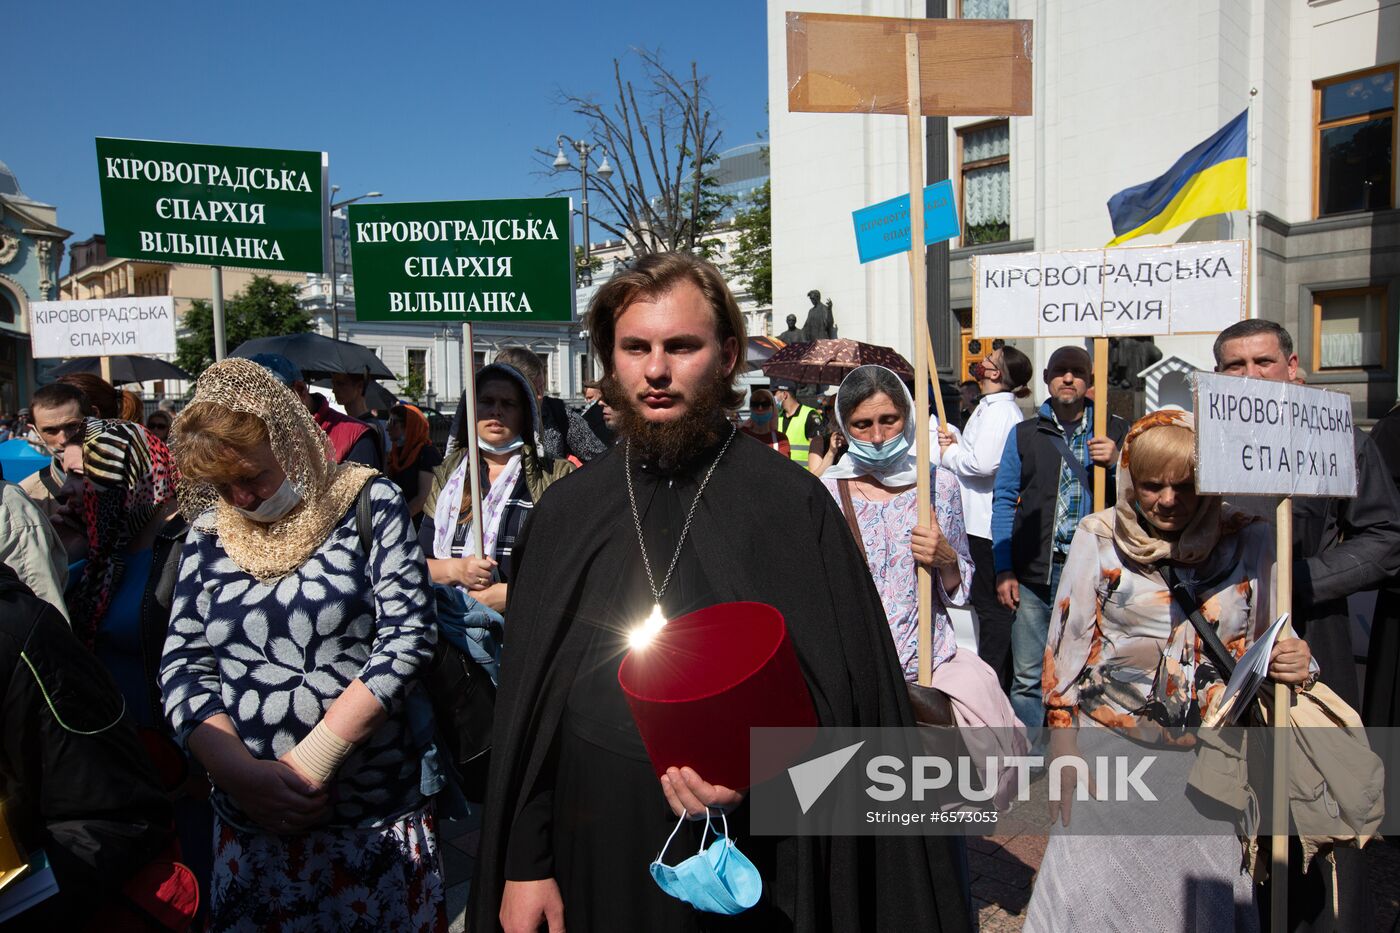 Ukraine Orthodox Church Rally